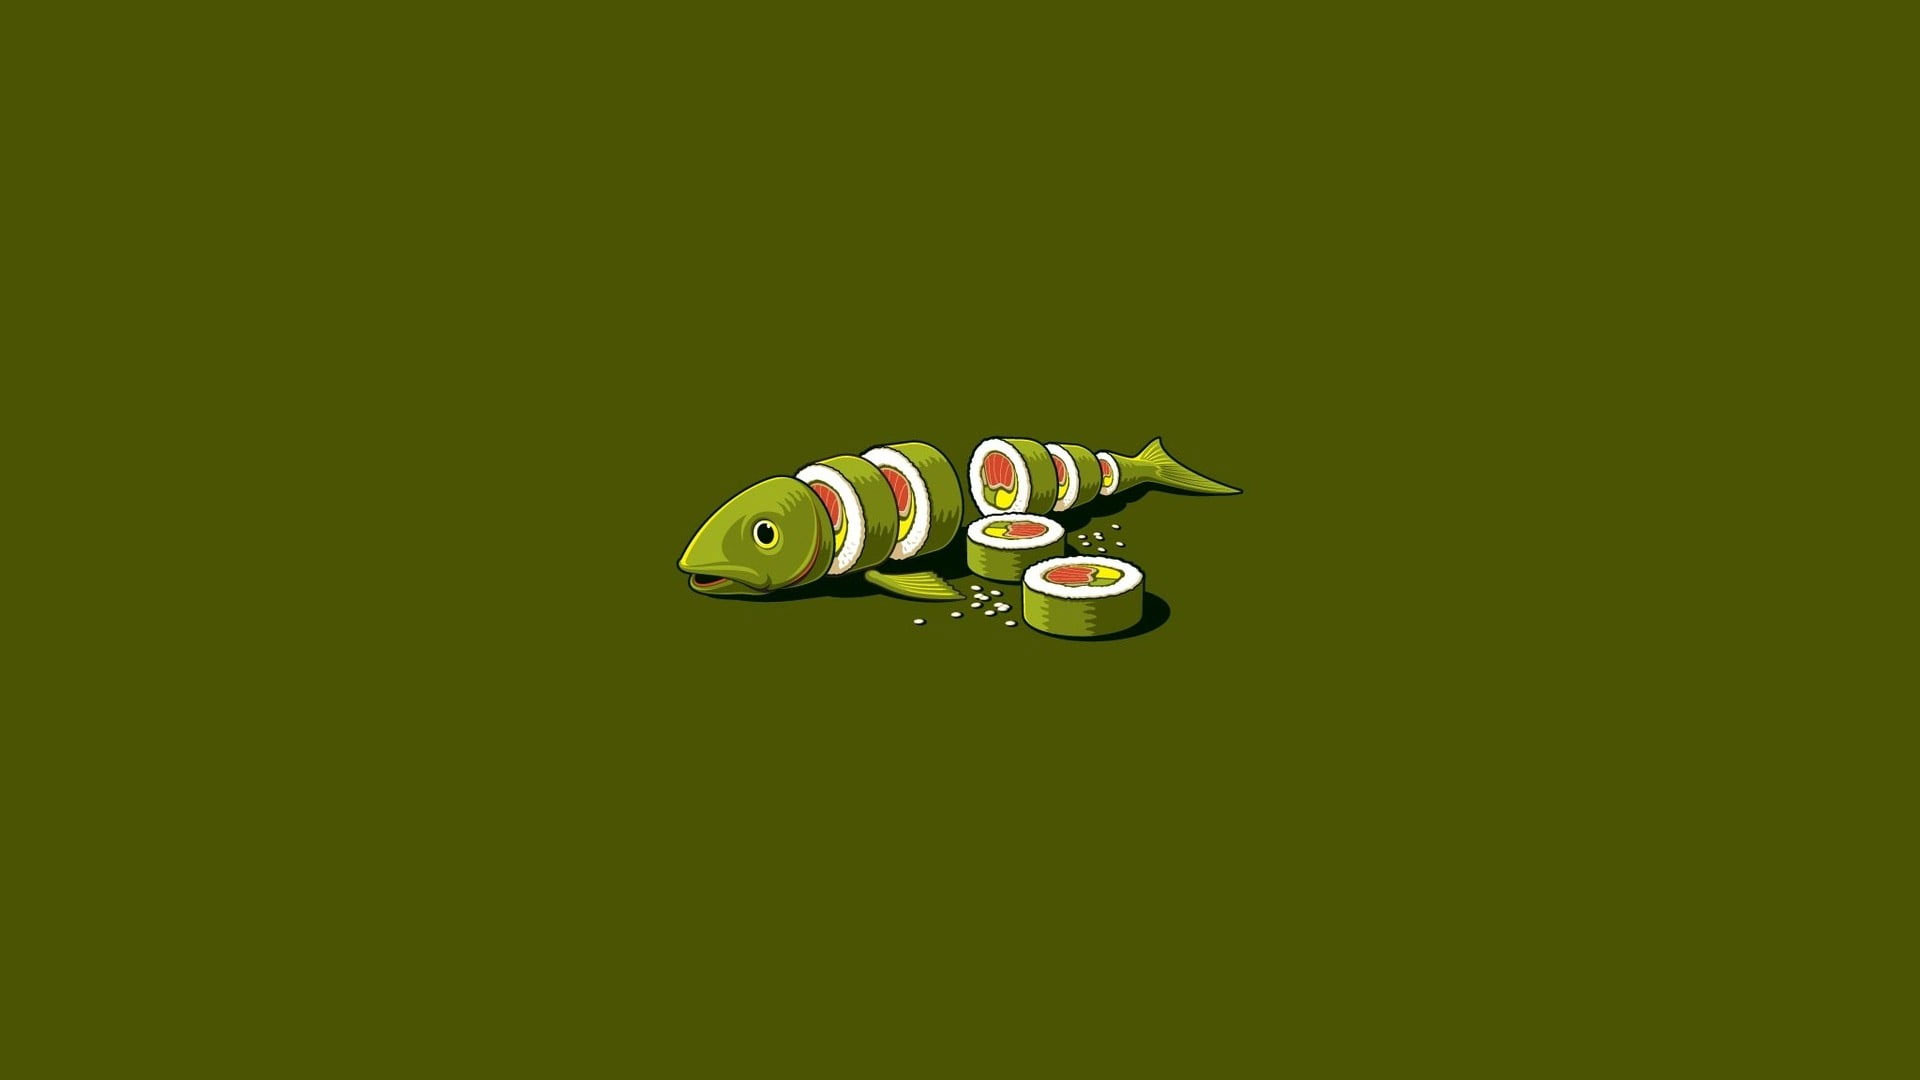 Wallpaper Sliced Green Fish Illustration, Minimal